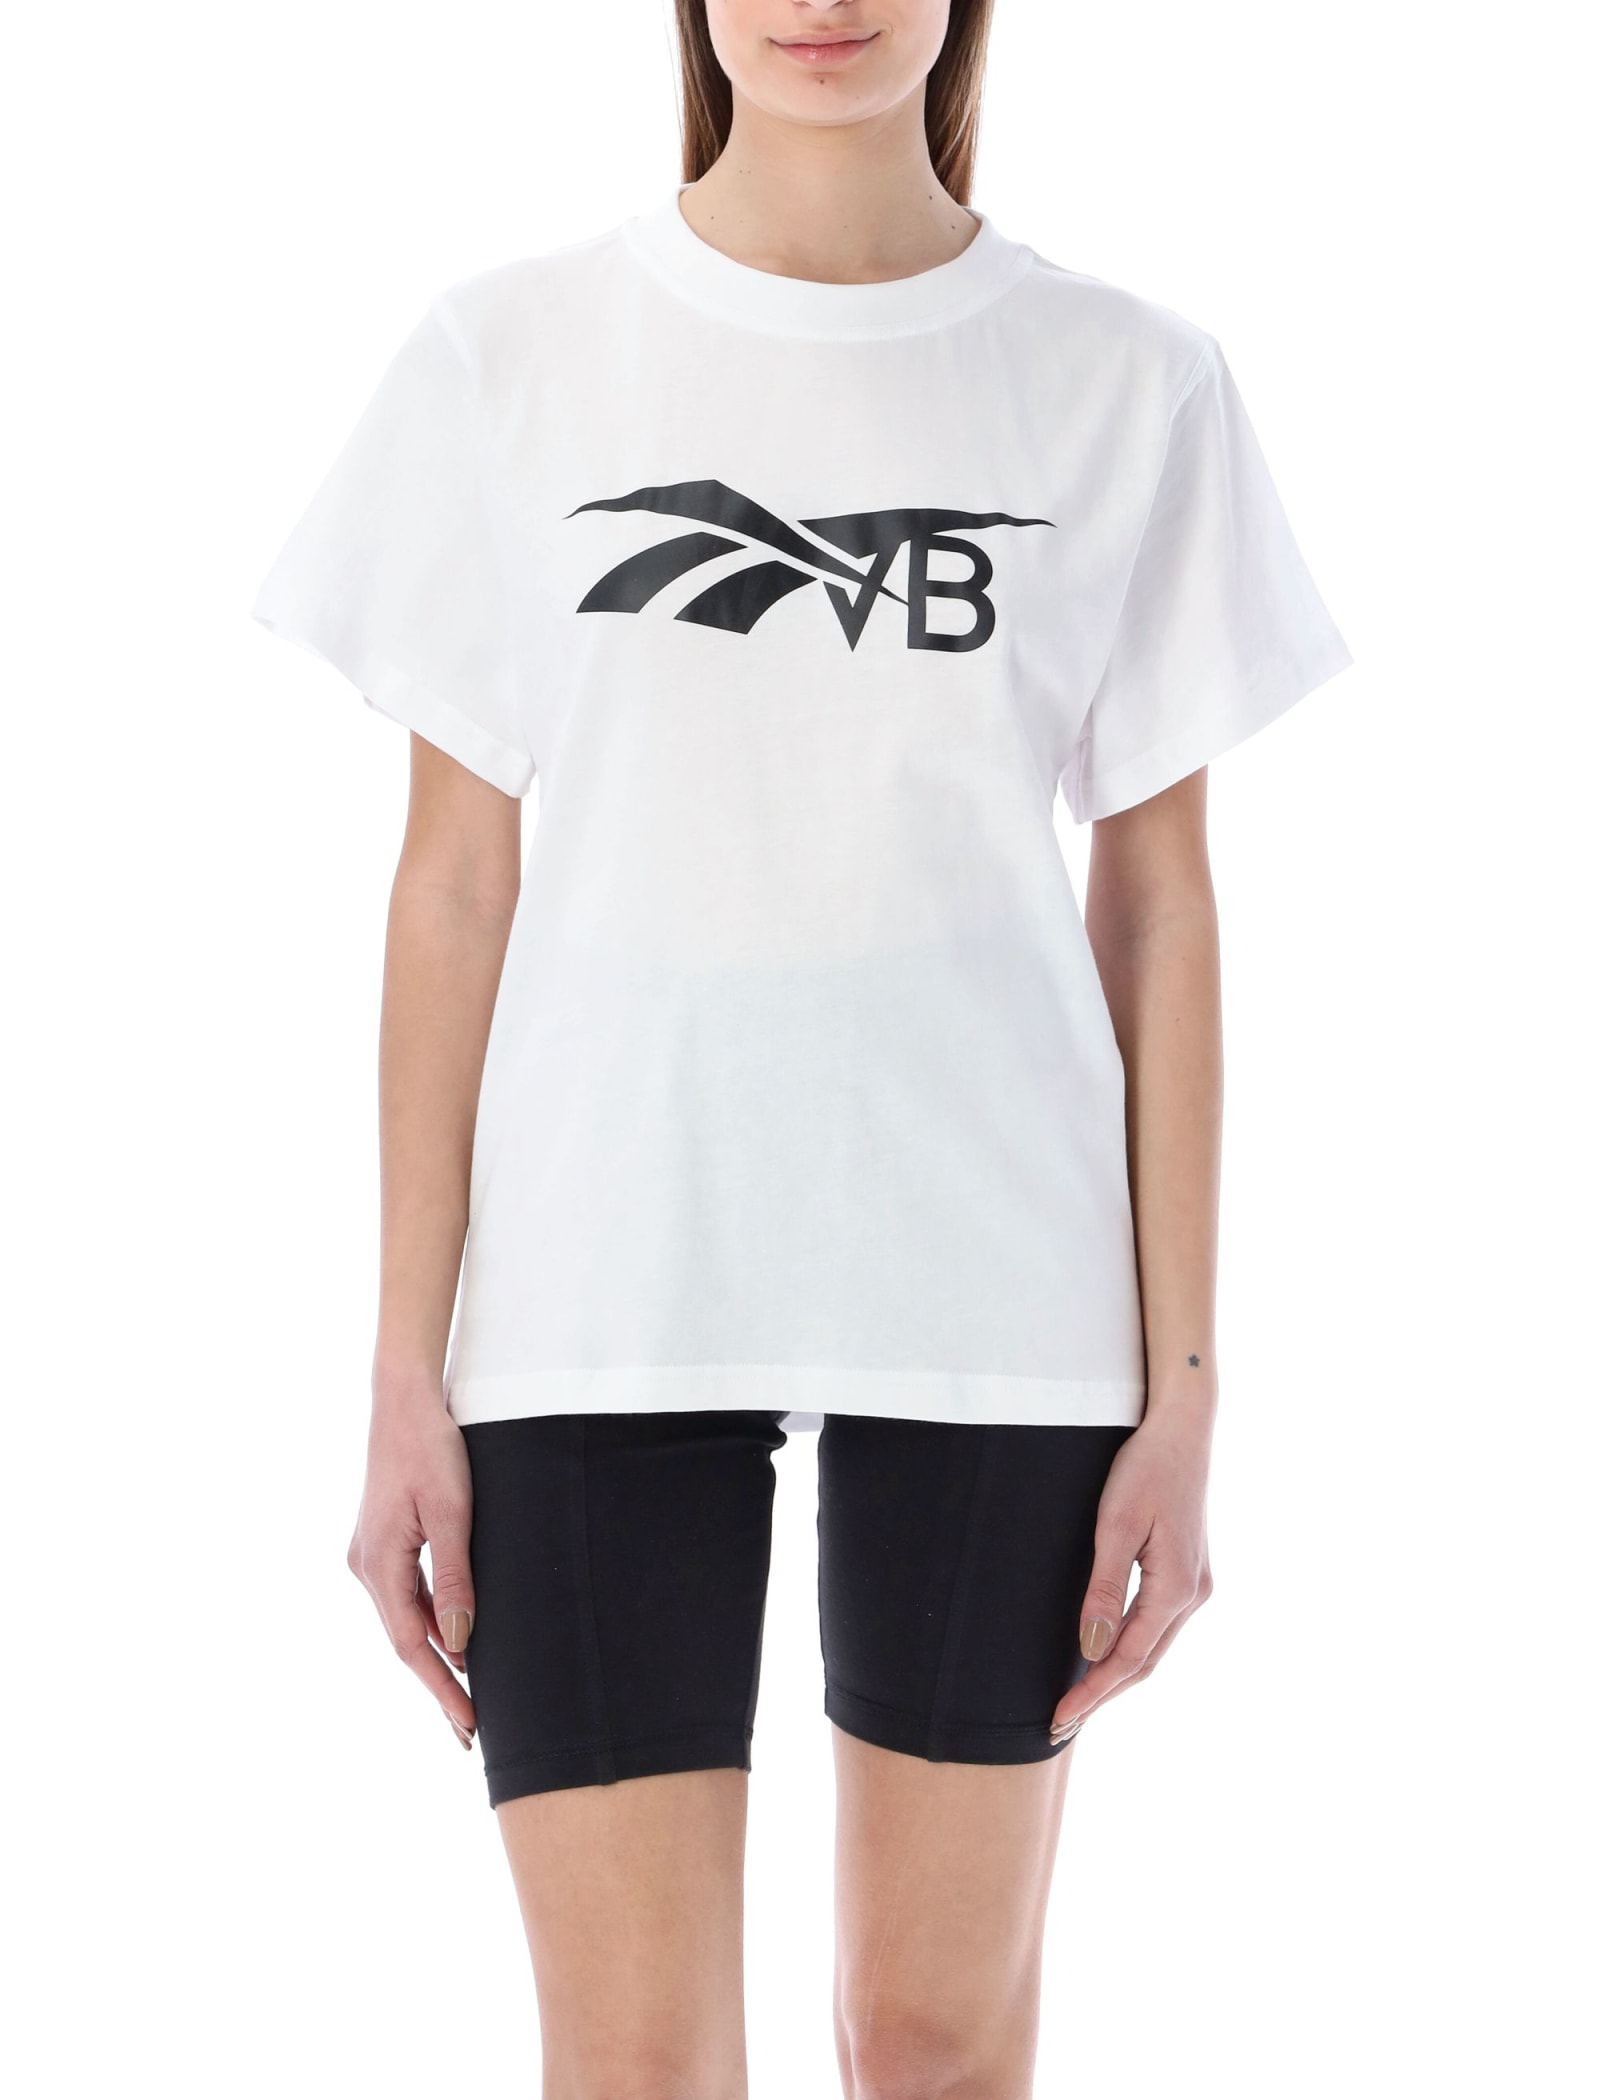 Reebok x Victoria Beckham Rbk T-shirt